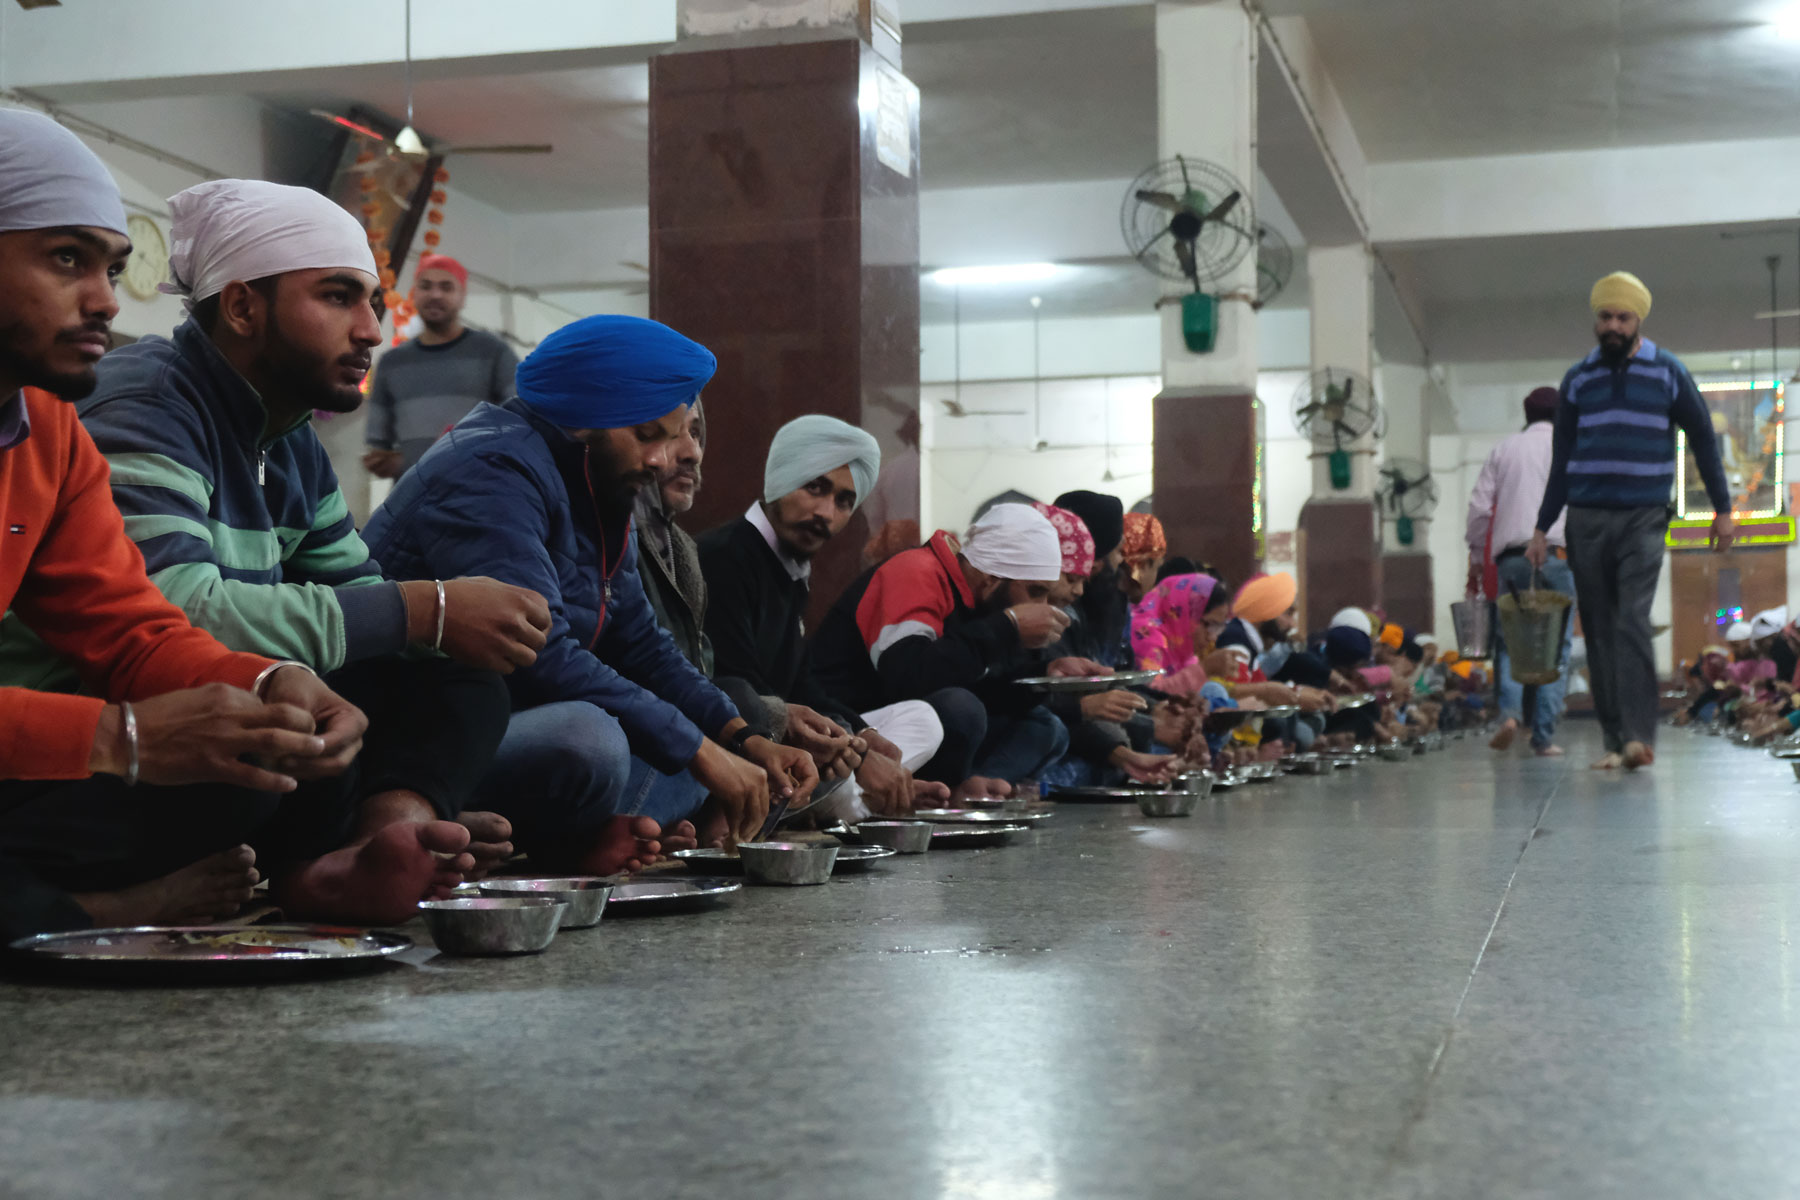 Menschen sitzen im goldenen Sikh-Tempel in Amritsar auf dem Boden. Vor ihnen steht Essgeschirr aus Metall.